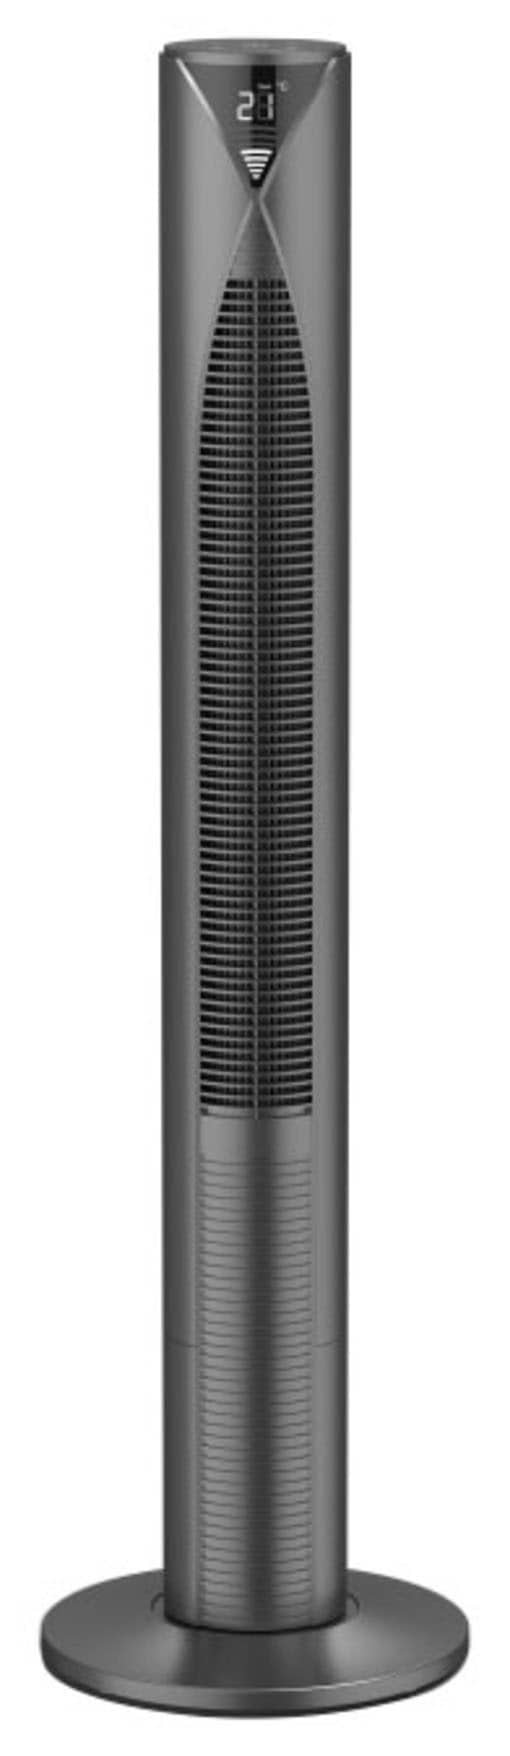 Hama Standventilator »Smarter Standventilator mit Fernbedienung 117cm, Turm, Displayanzeige«, 18,6 cm Durchmesser, 3 Geschwindigkeitsstufen, Timer, energiesparend mit Standby Modus